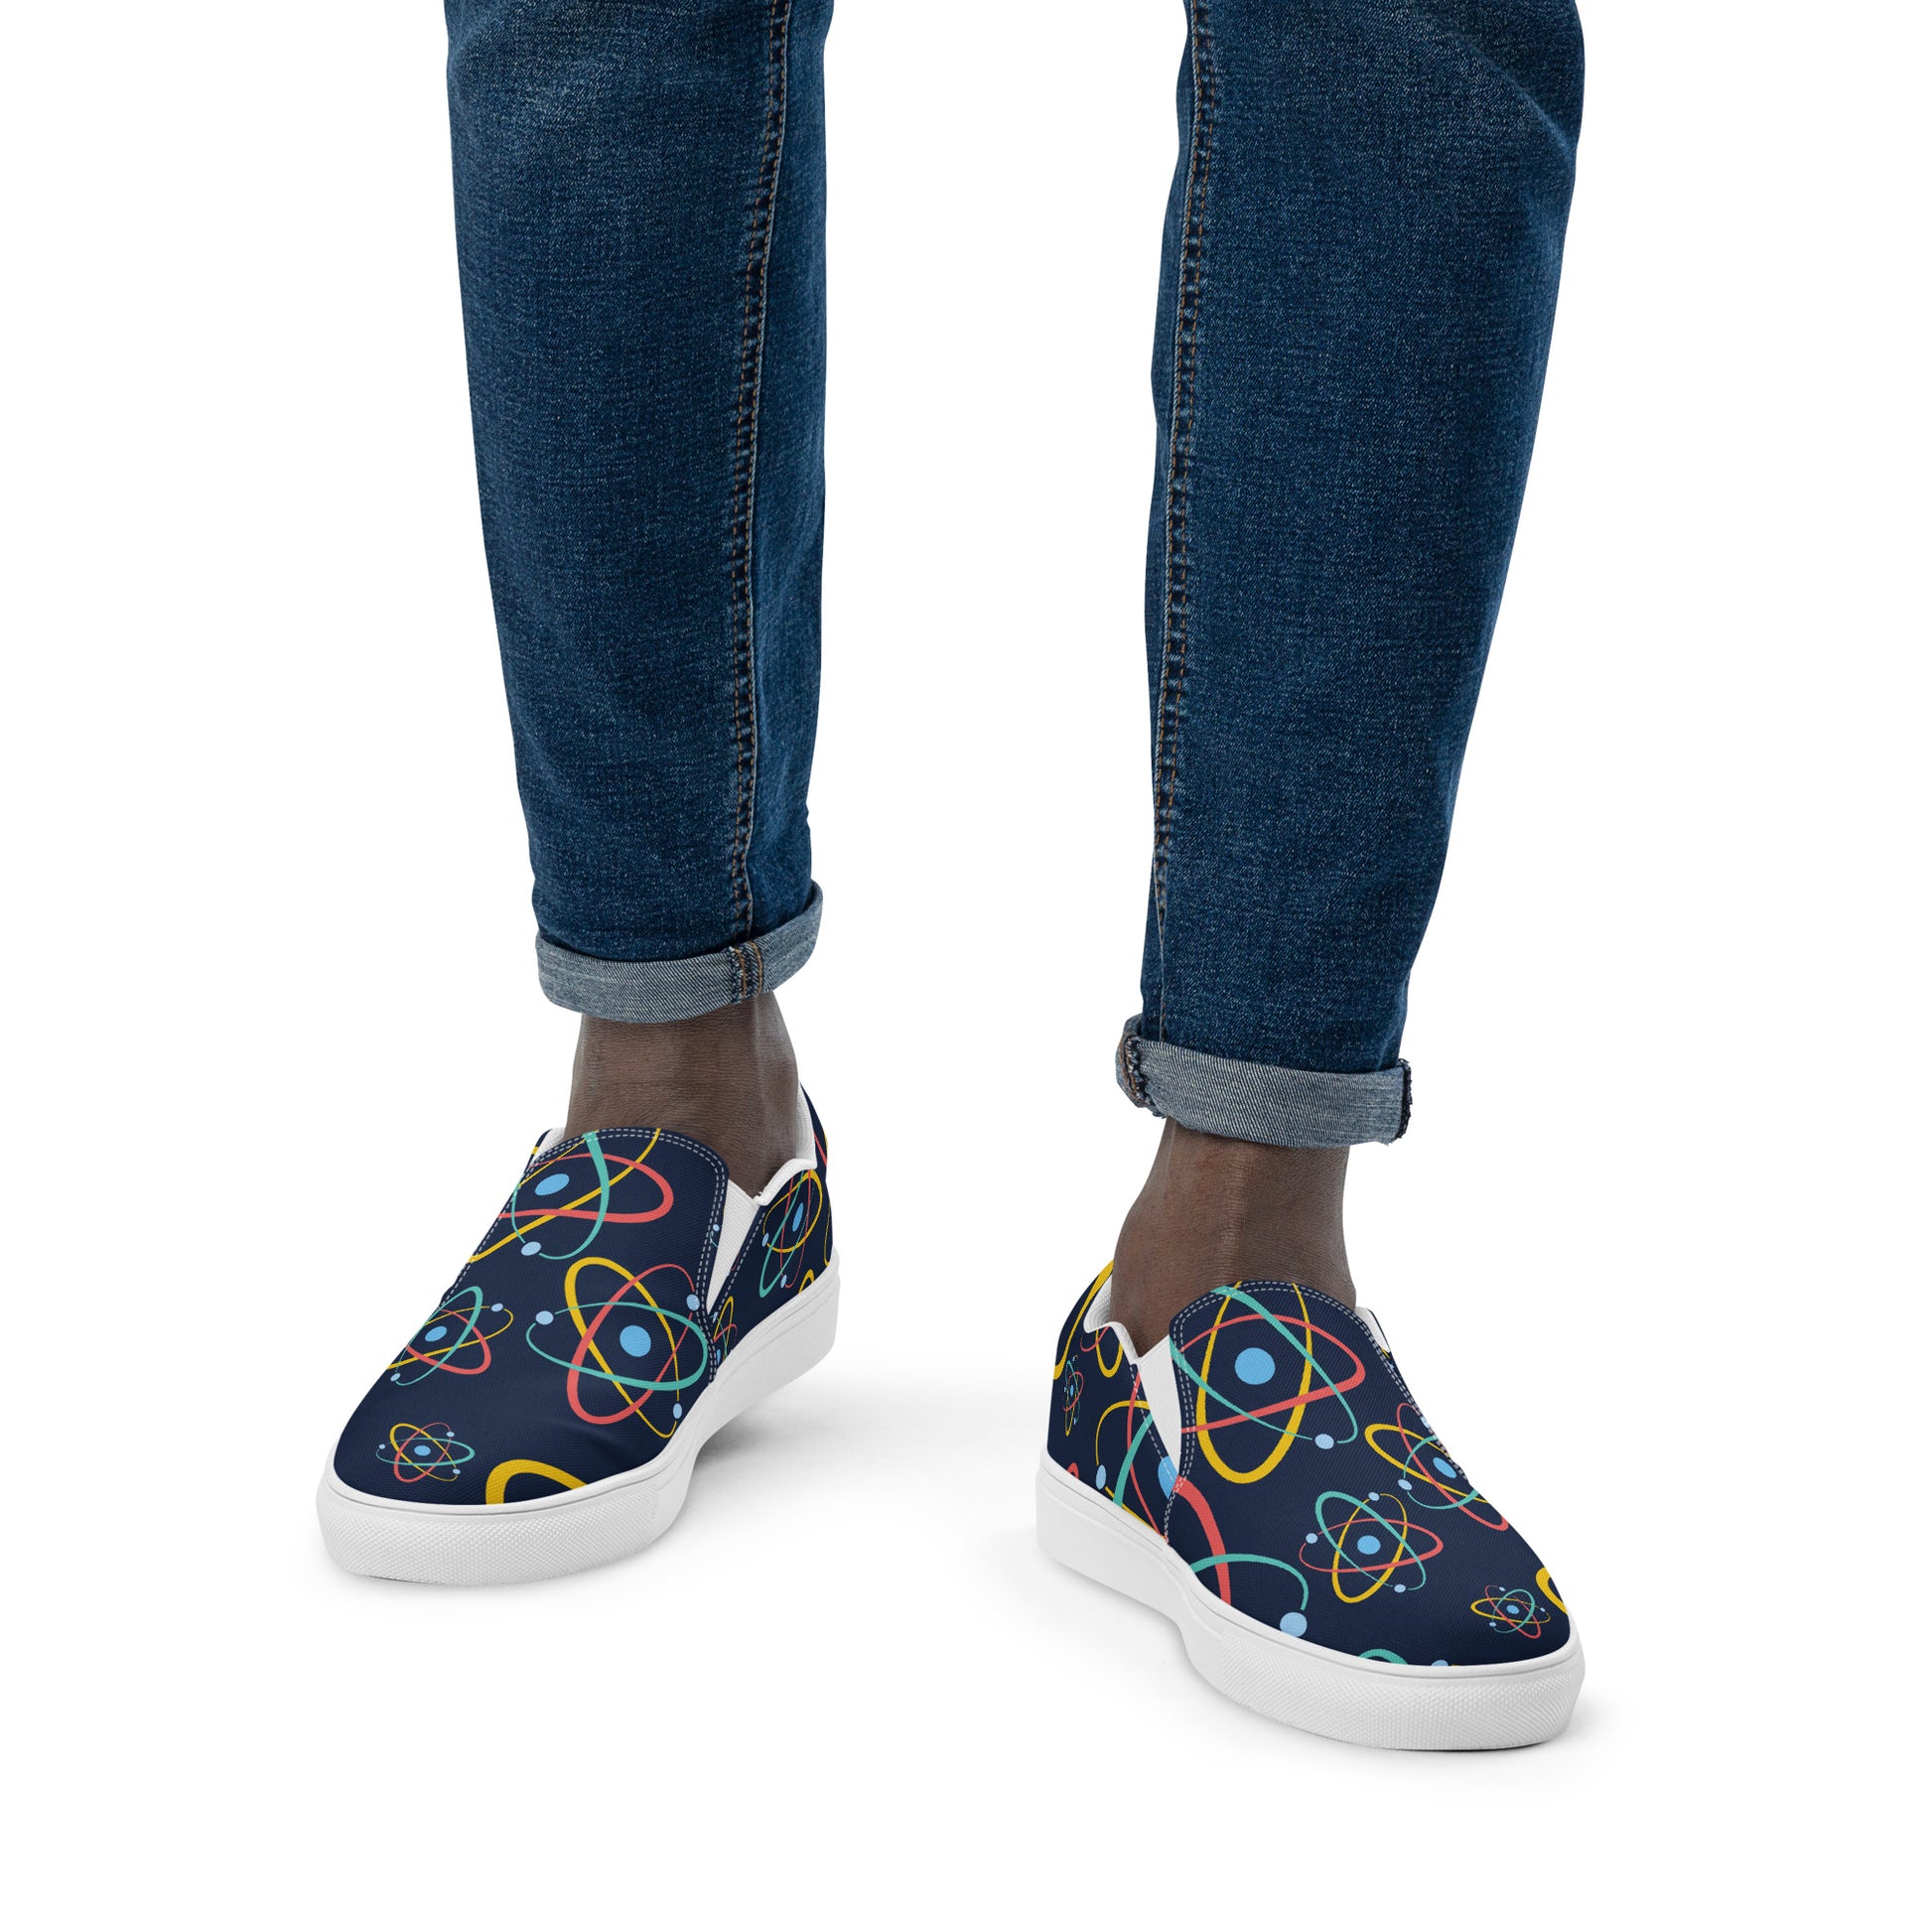 Atoms - Men’s slip-on canvas shoes Mens Slip On Shoes